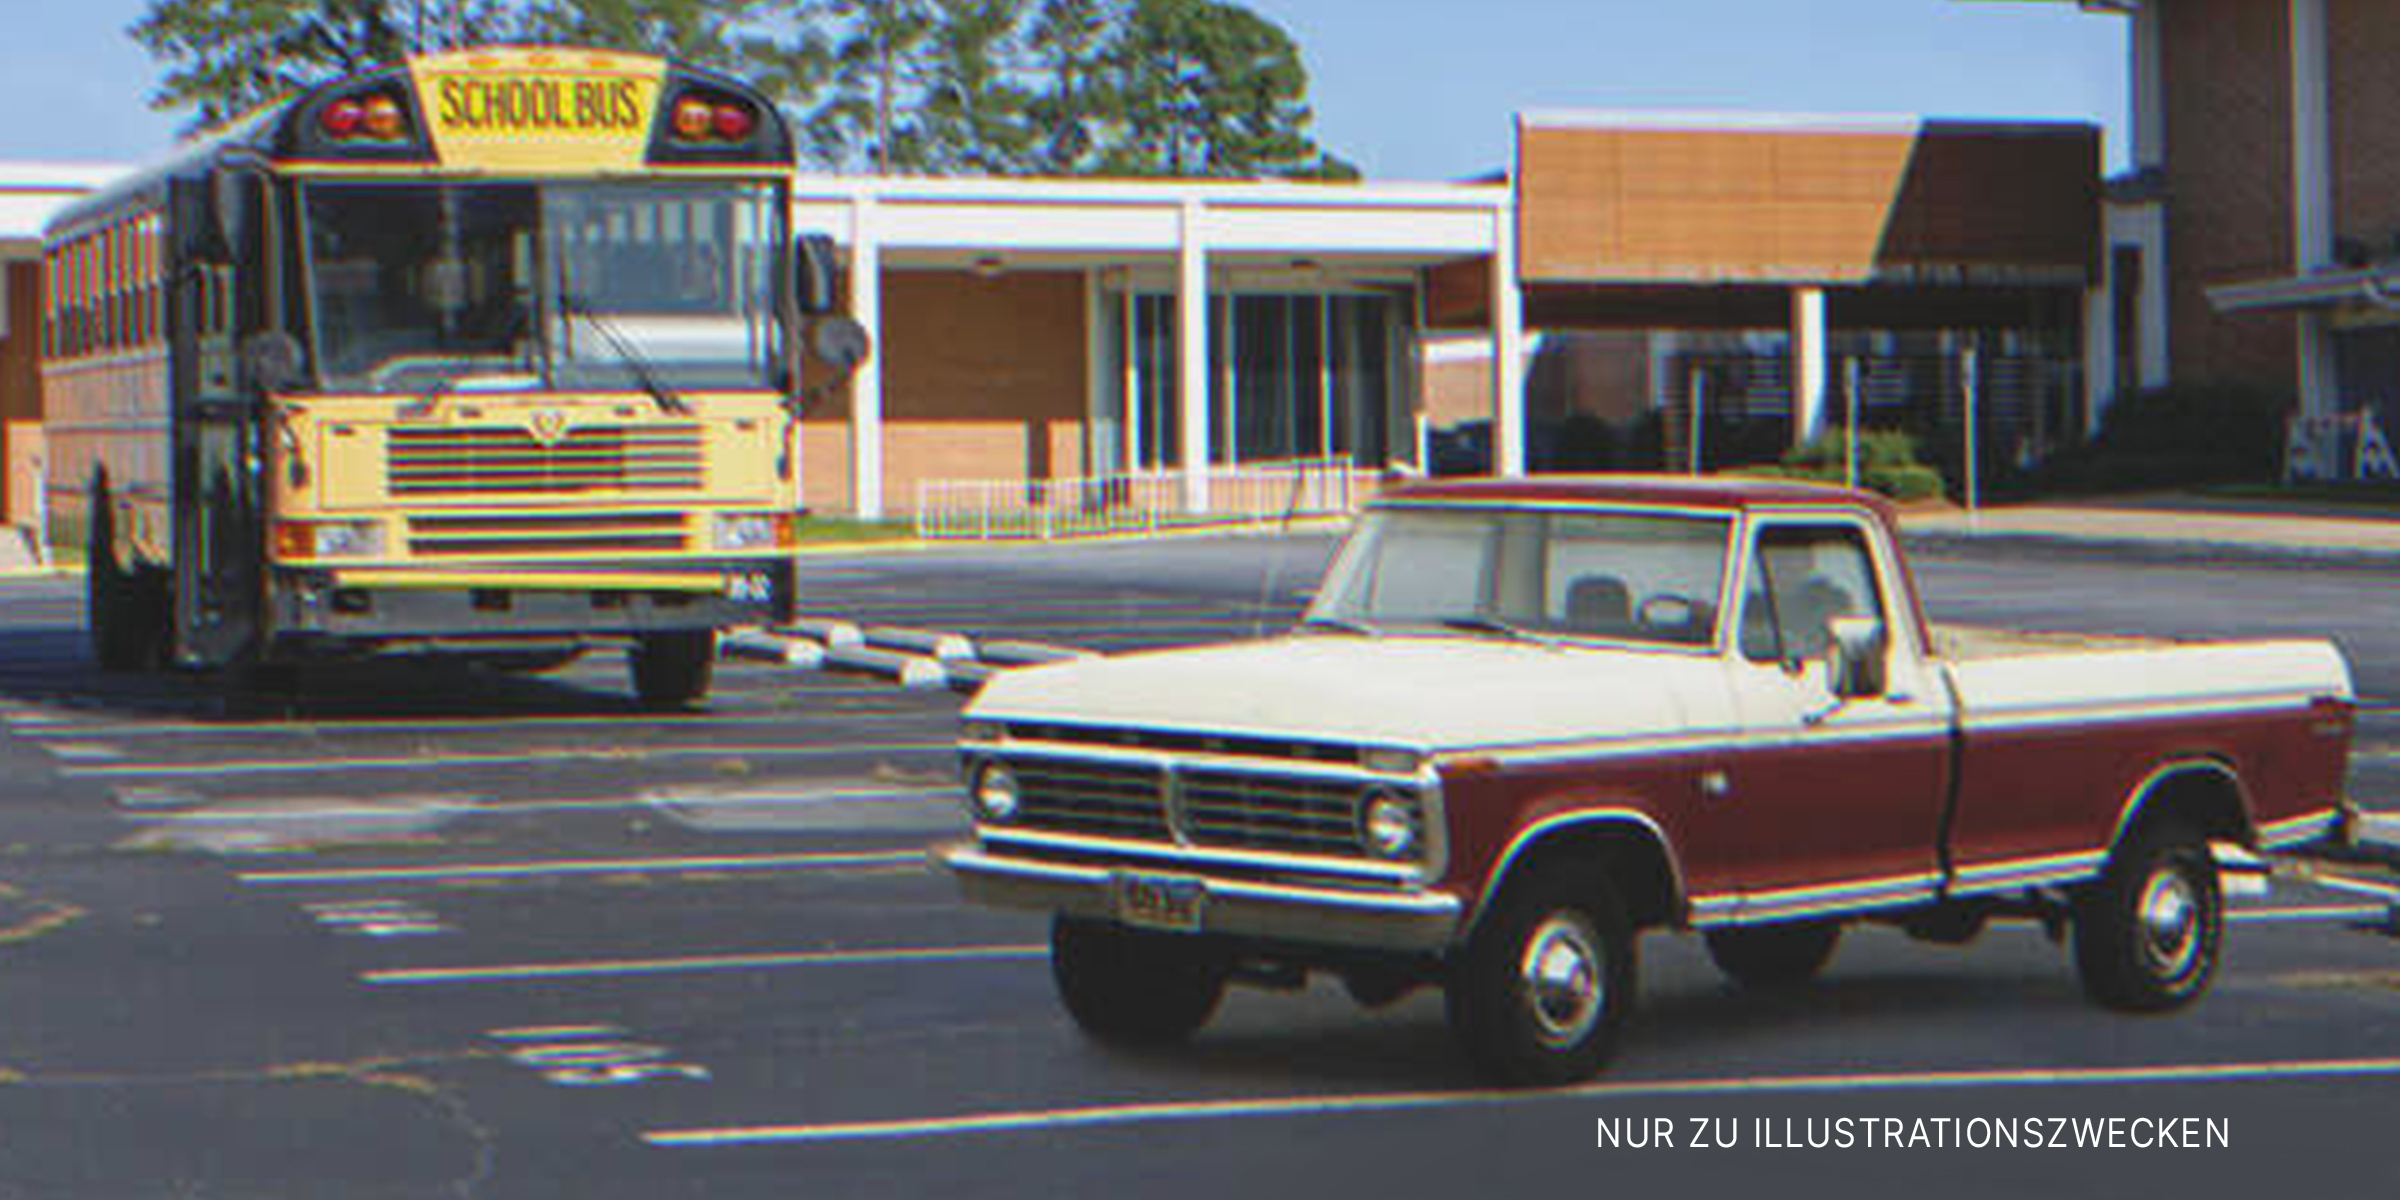 Alter Kleintransporter auf dem Schulparkplatz | Quelle: Flickr / Alabama Extension (Public Domain) Flickr / Crown Star Images (CC BY 2.0)